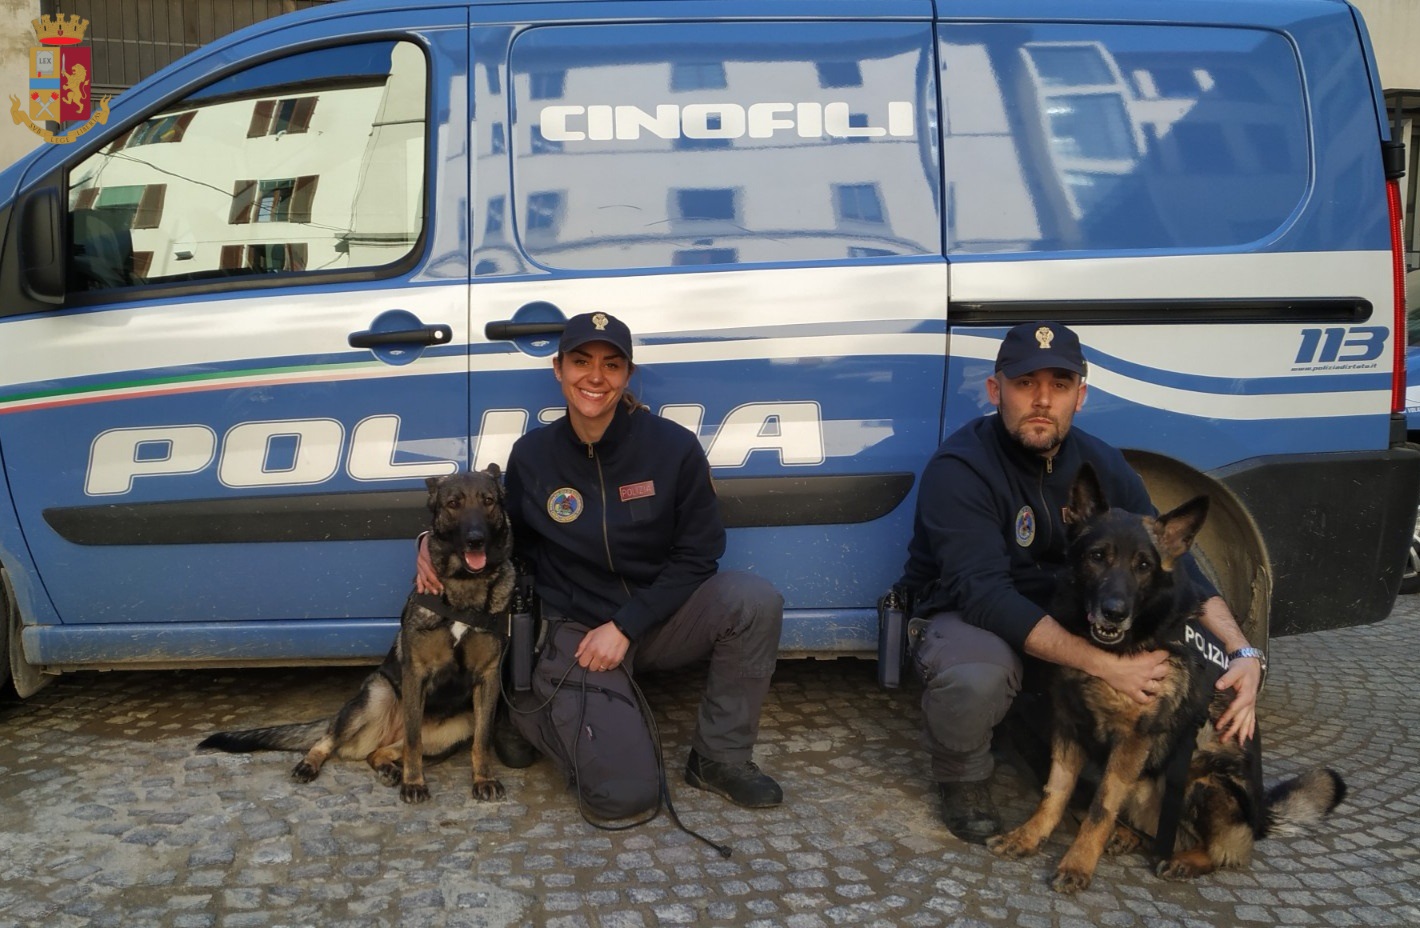 La Polizia di Stato sequestra 6 chili e mezzo di hashish alle Cascine: la droga è stata scoperta sottoterra dai cani antidroga